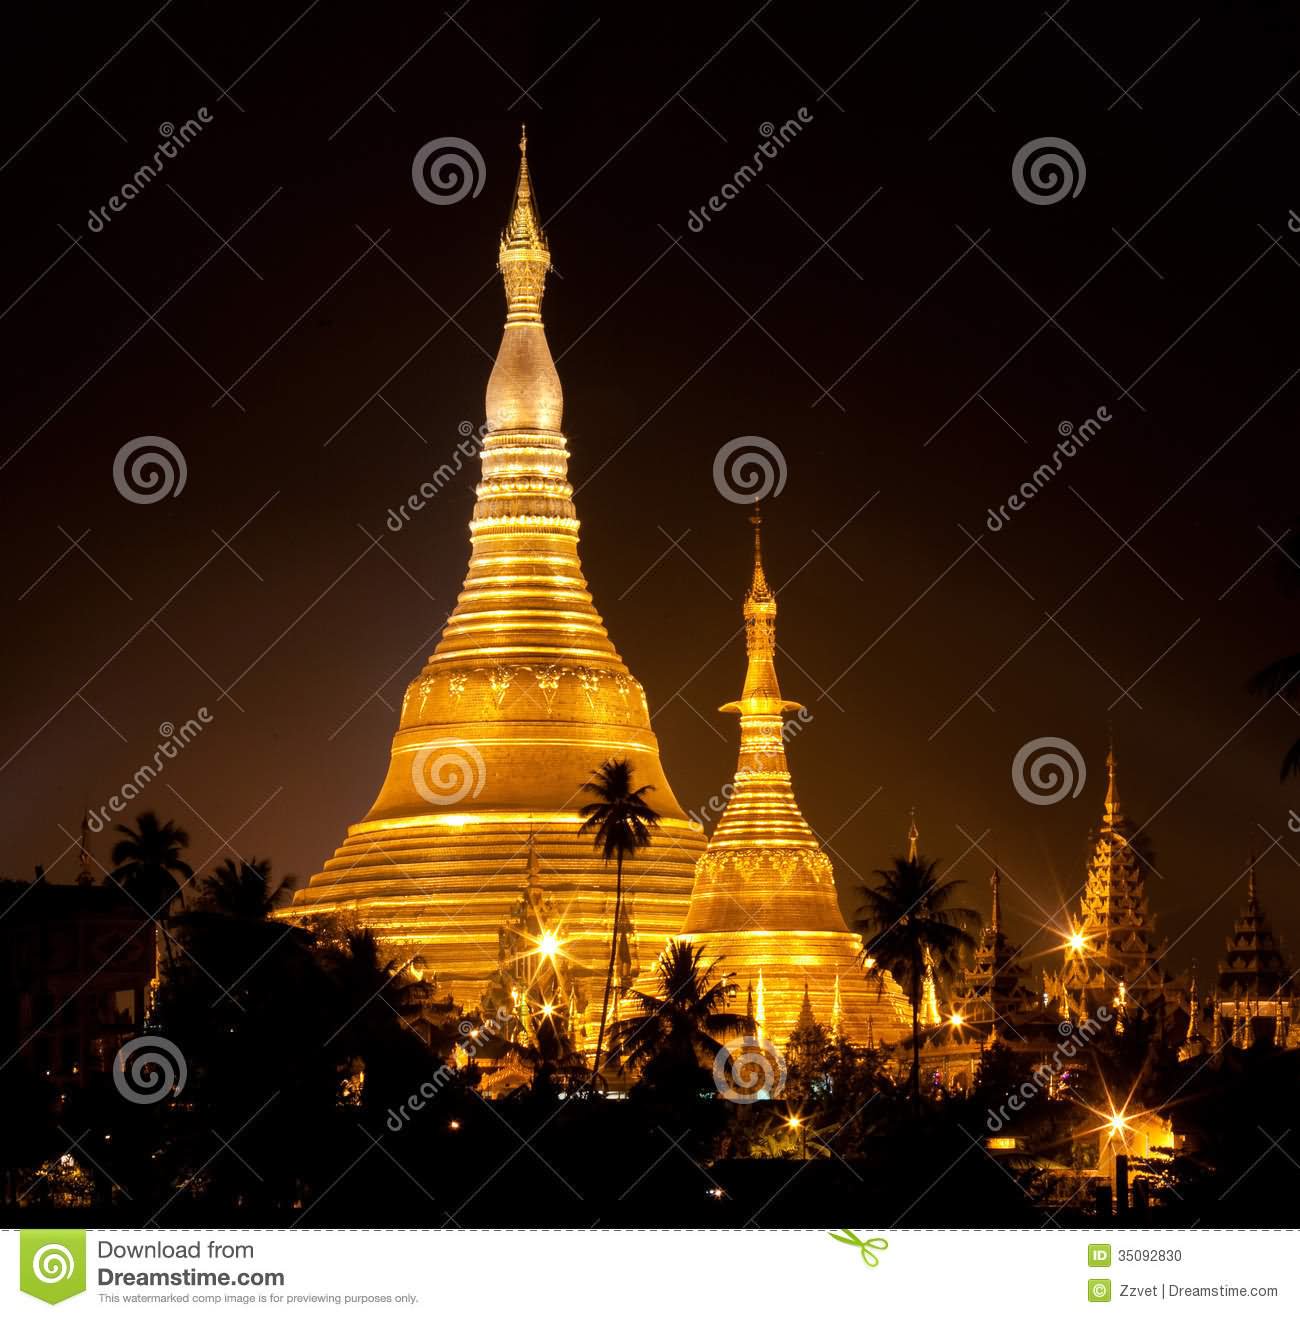 Stunning Night View Of The Shwedagon Pagoda, Yangon